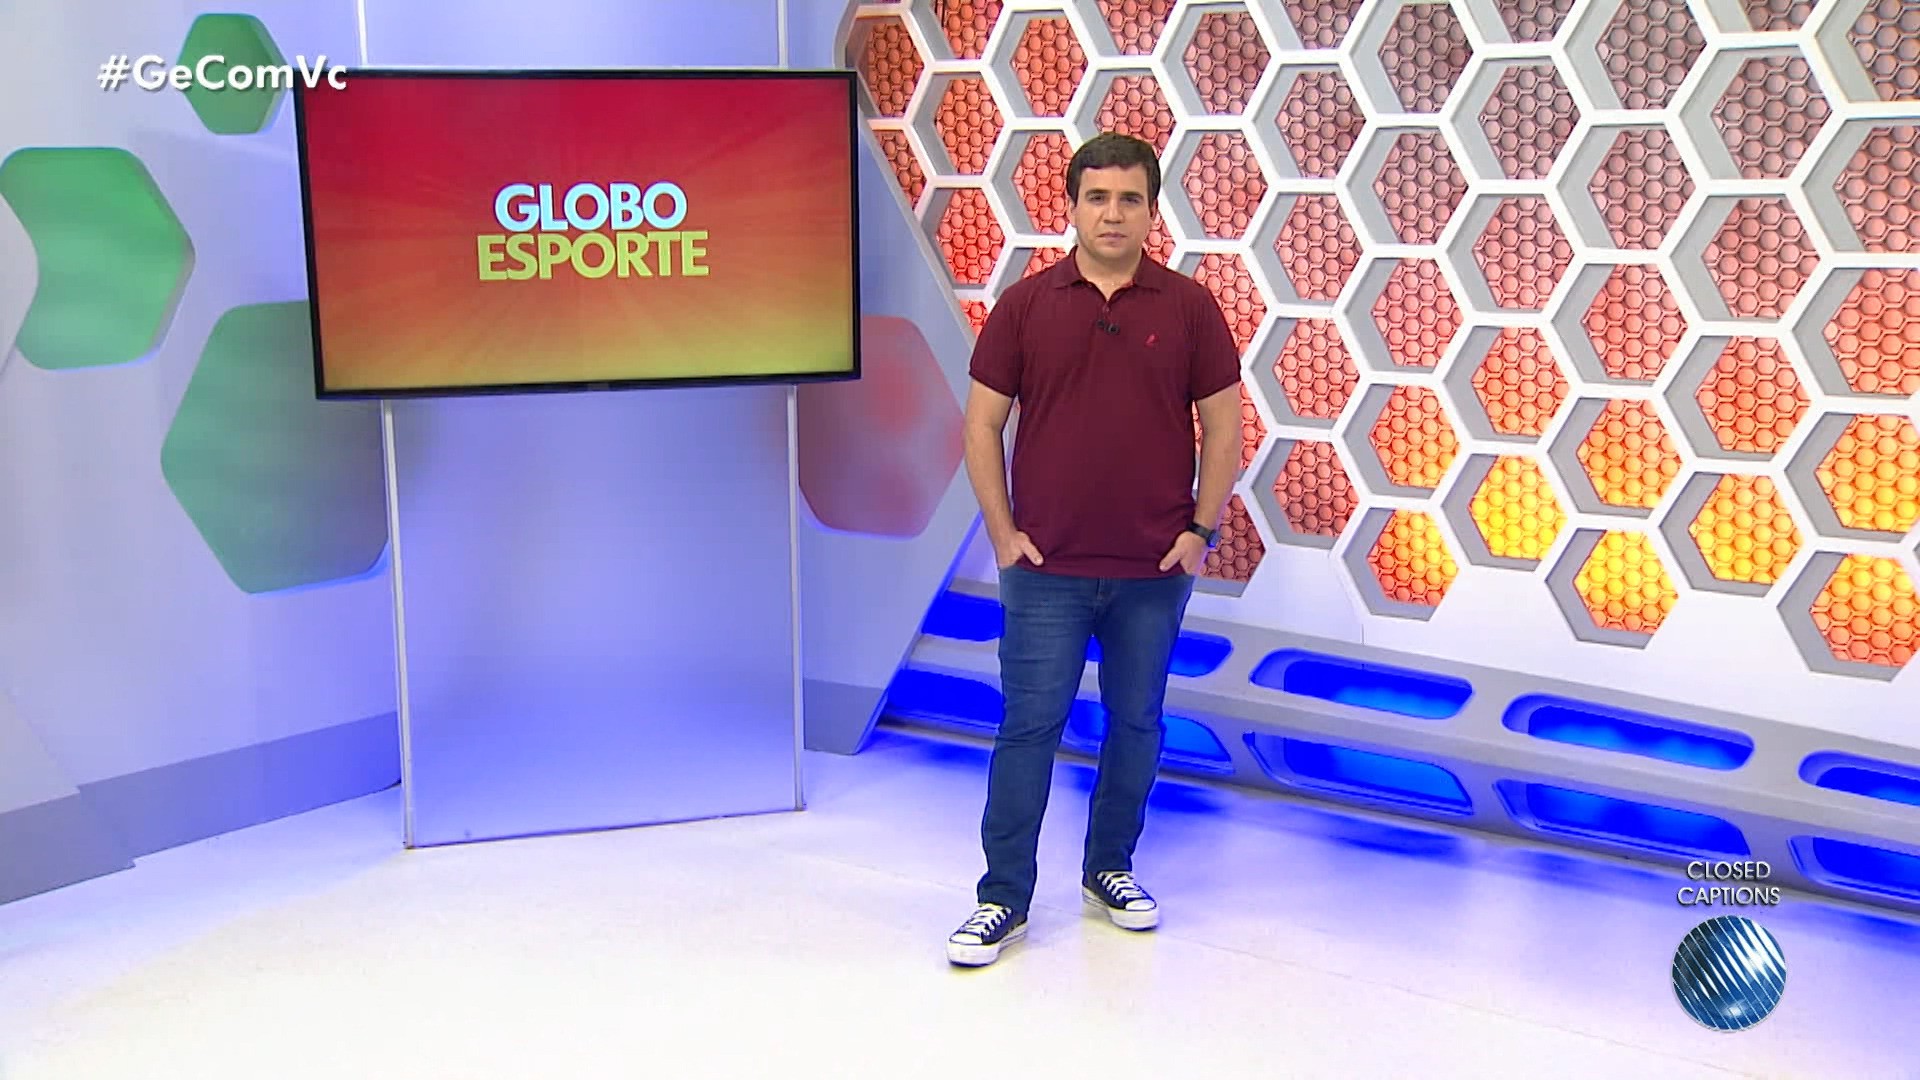 V Deos Globo Esporte Ba Desta Quarta Feira De Mar O Ba Ge